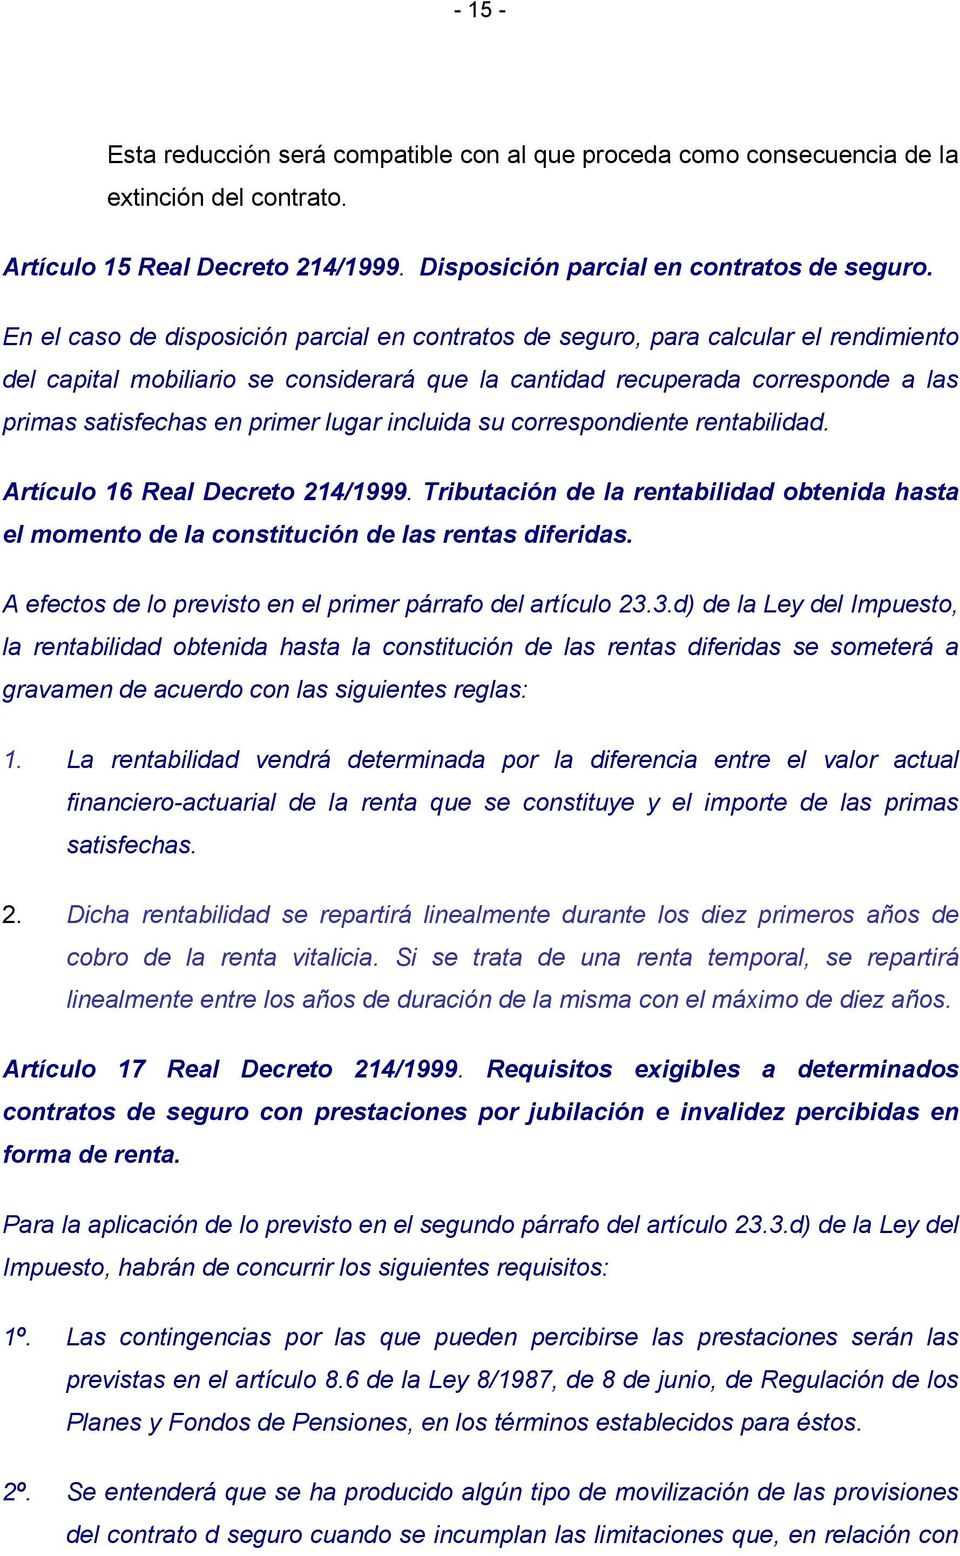 lugar incluida su correspondiente rentabilidad. Artículo 16 Real Decreto 214/1999. Tributación de la rentabilidad obtenida hasta el momento de la constitución de las rentas diferidas.